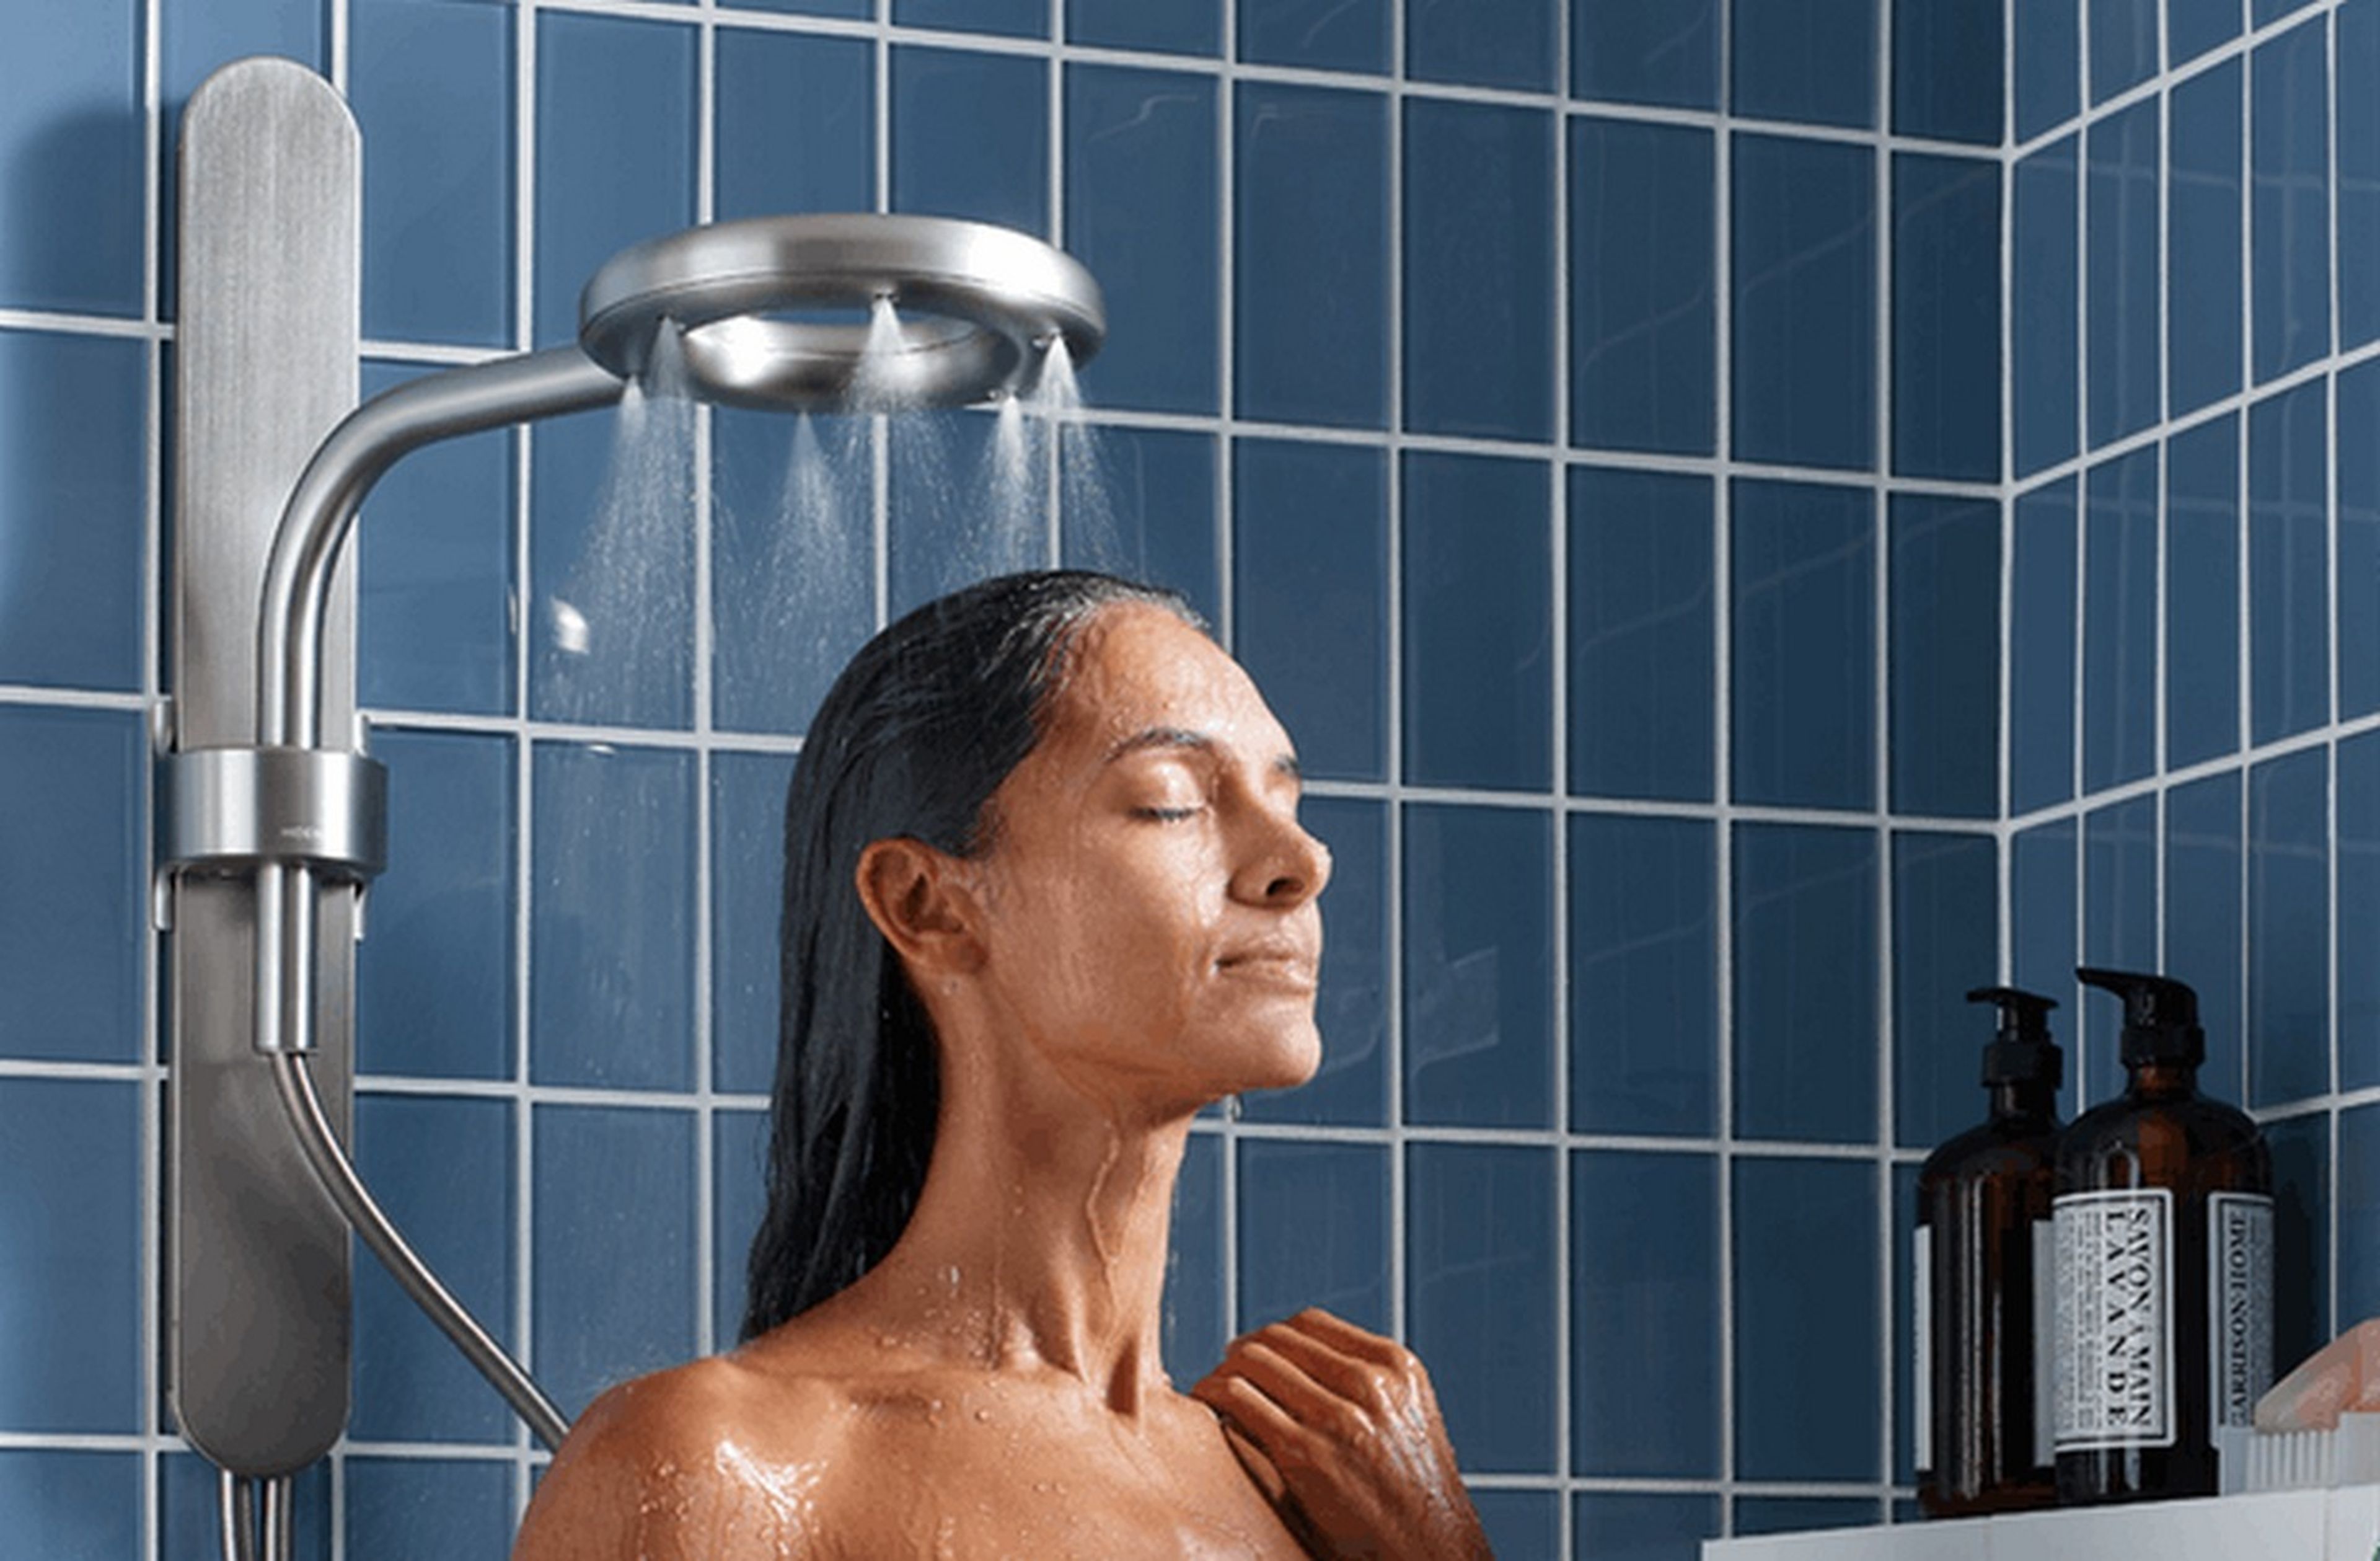 La mejor alcachofa de ducha para regular el caudal y presión del agua